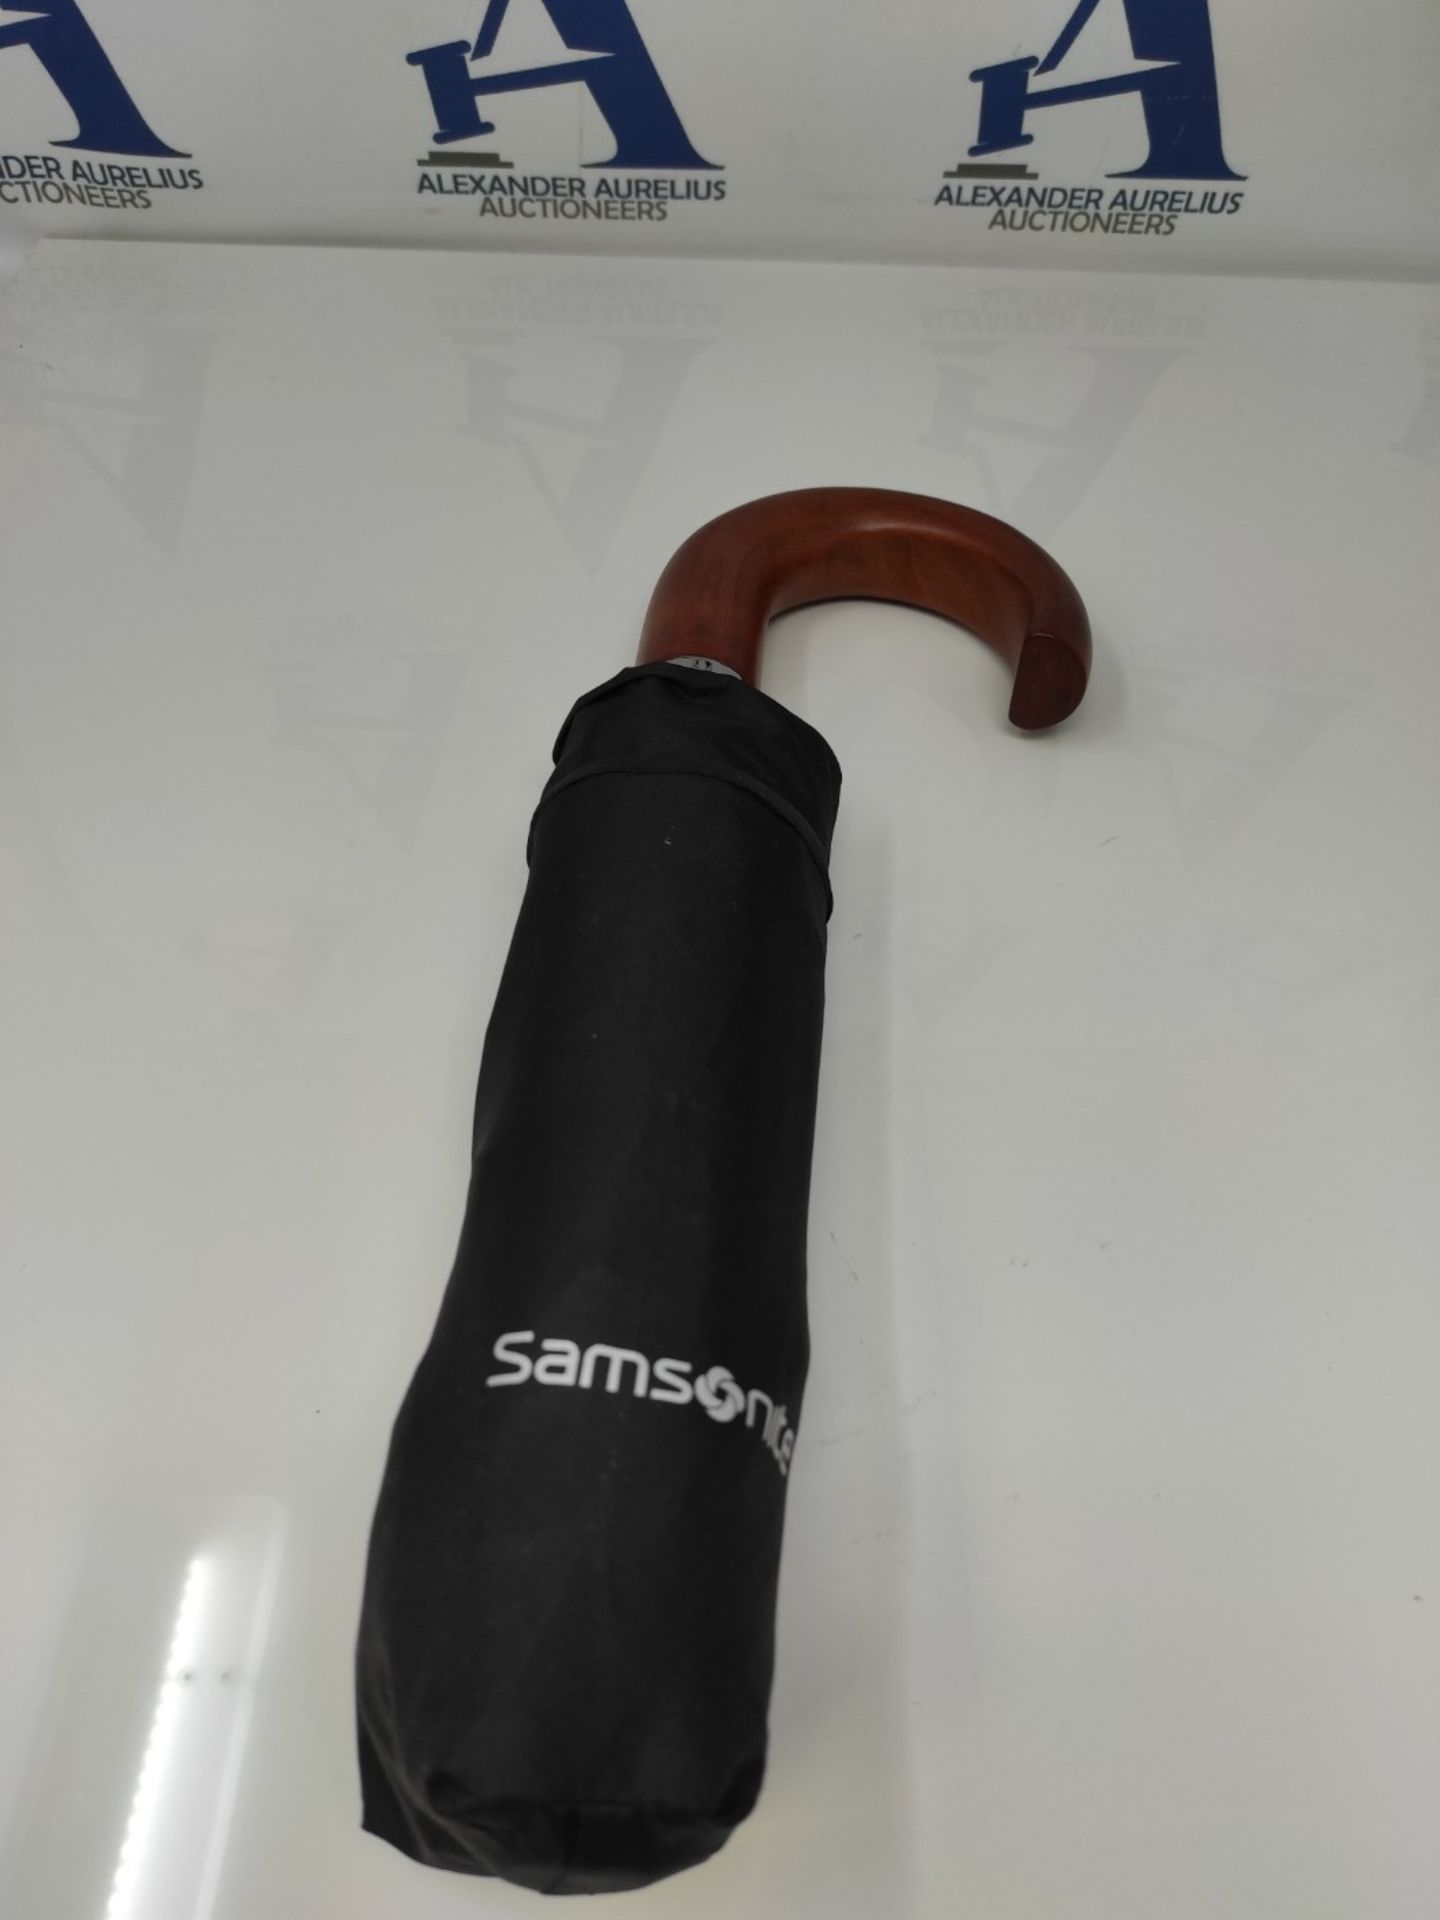 SAMSONITE Wood Classic S - 3 Section Auto Open Close Crook Umbrella, 33 cm, Black - Image 3 of 3